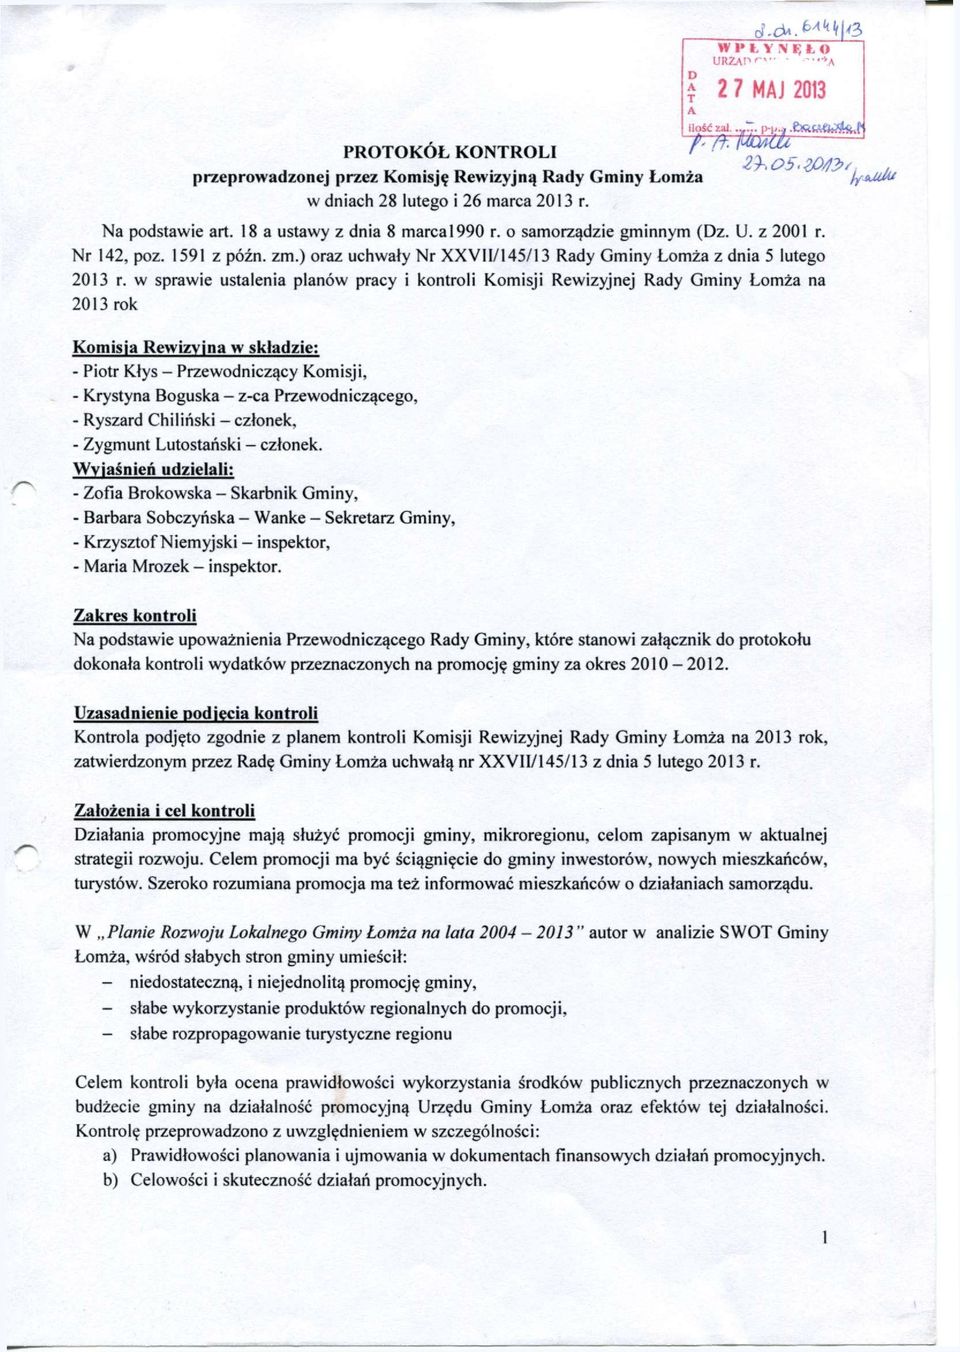 w sprawie ustalenia planów pracy i kontroli Komisji Rewizyjnej Rady Gminy Łomża na 2013 rok Zakres kontroli Na podstawie upoważnienia Przewodniczącego Rady Gminy, które stanowi załącznik do protokołu